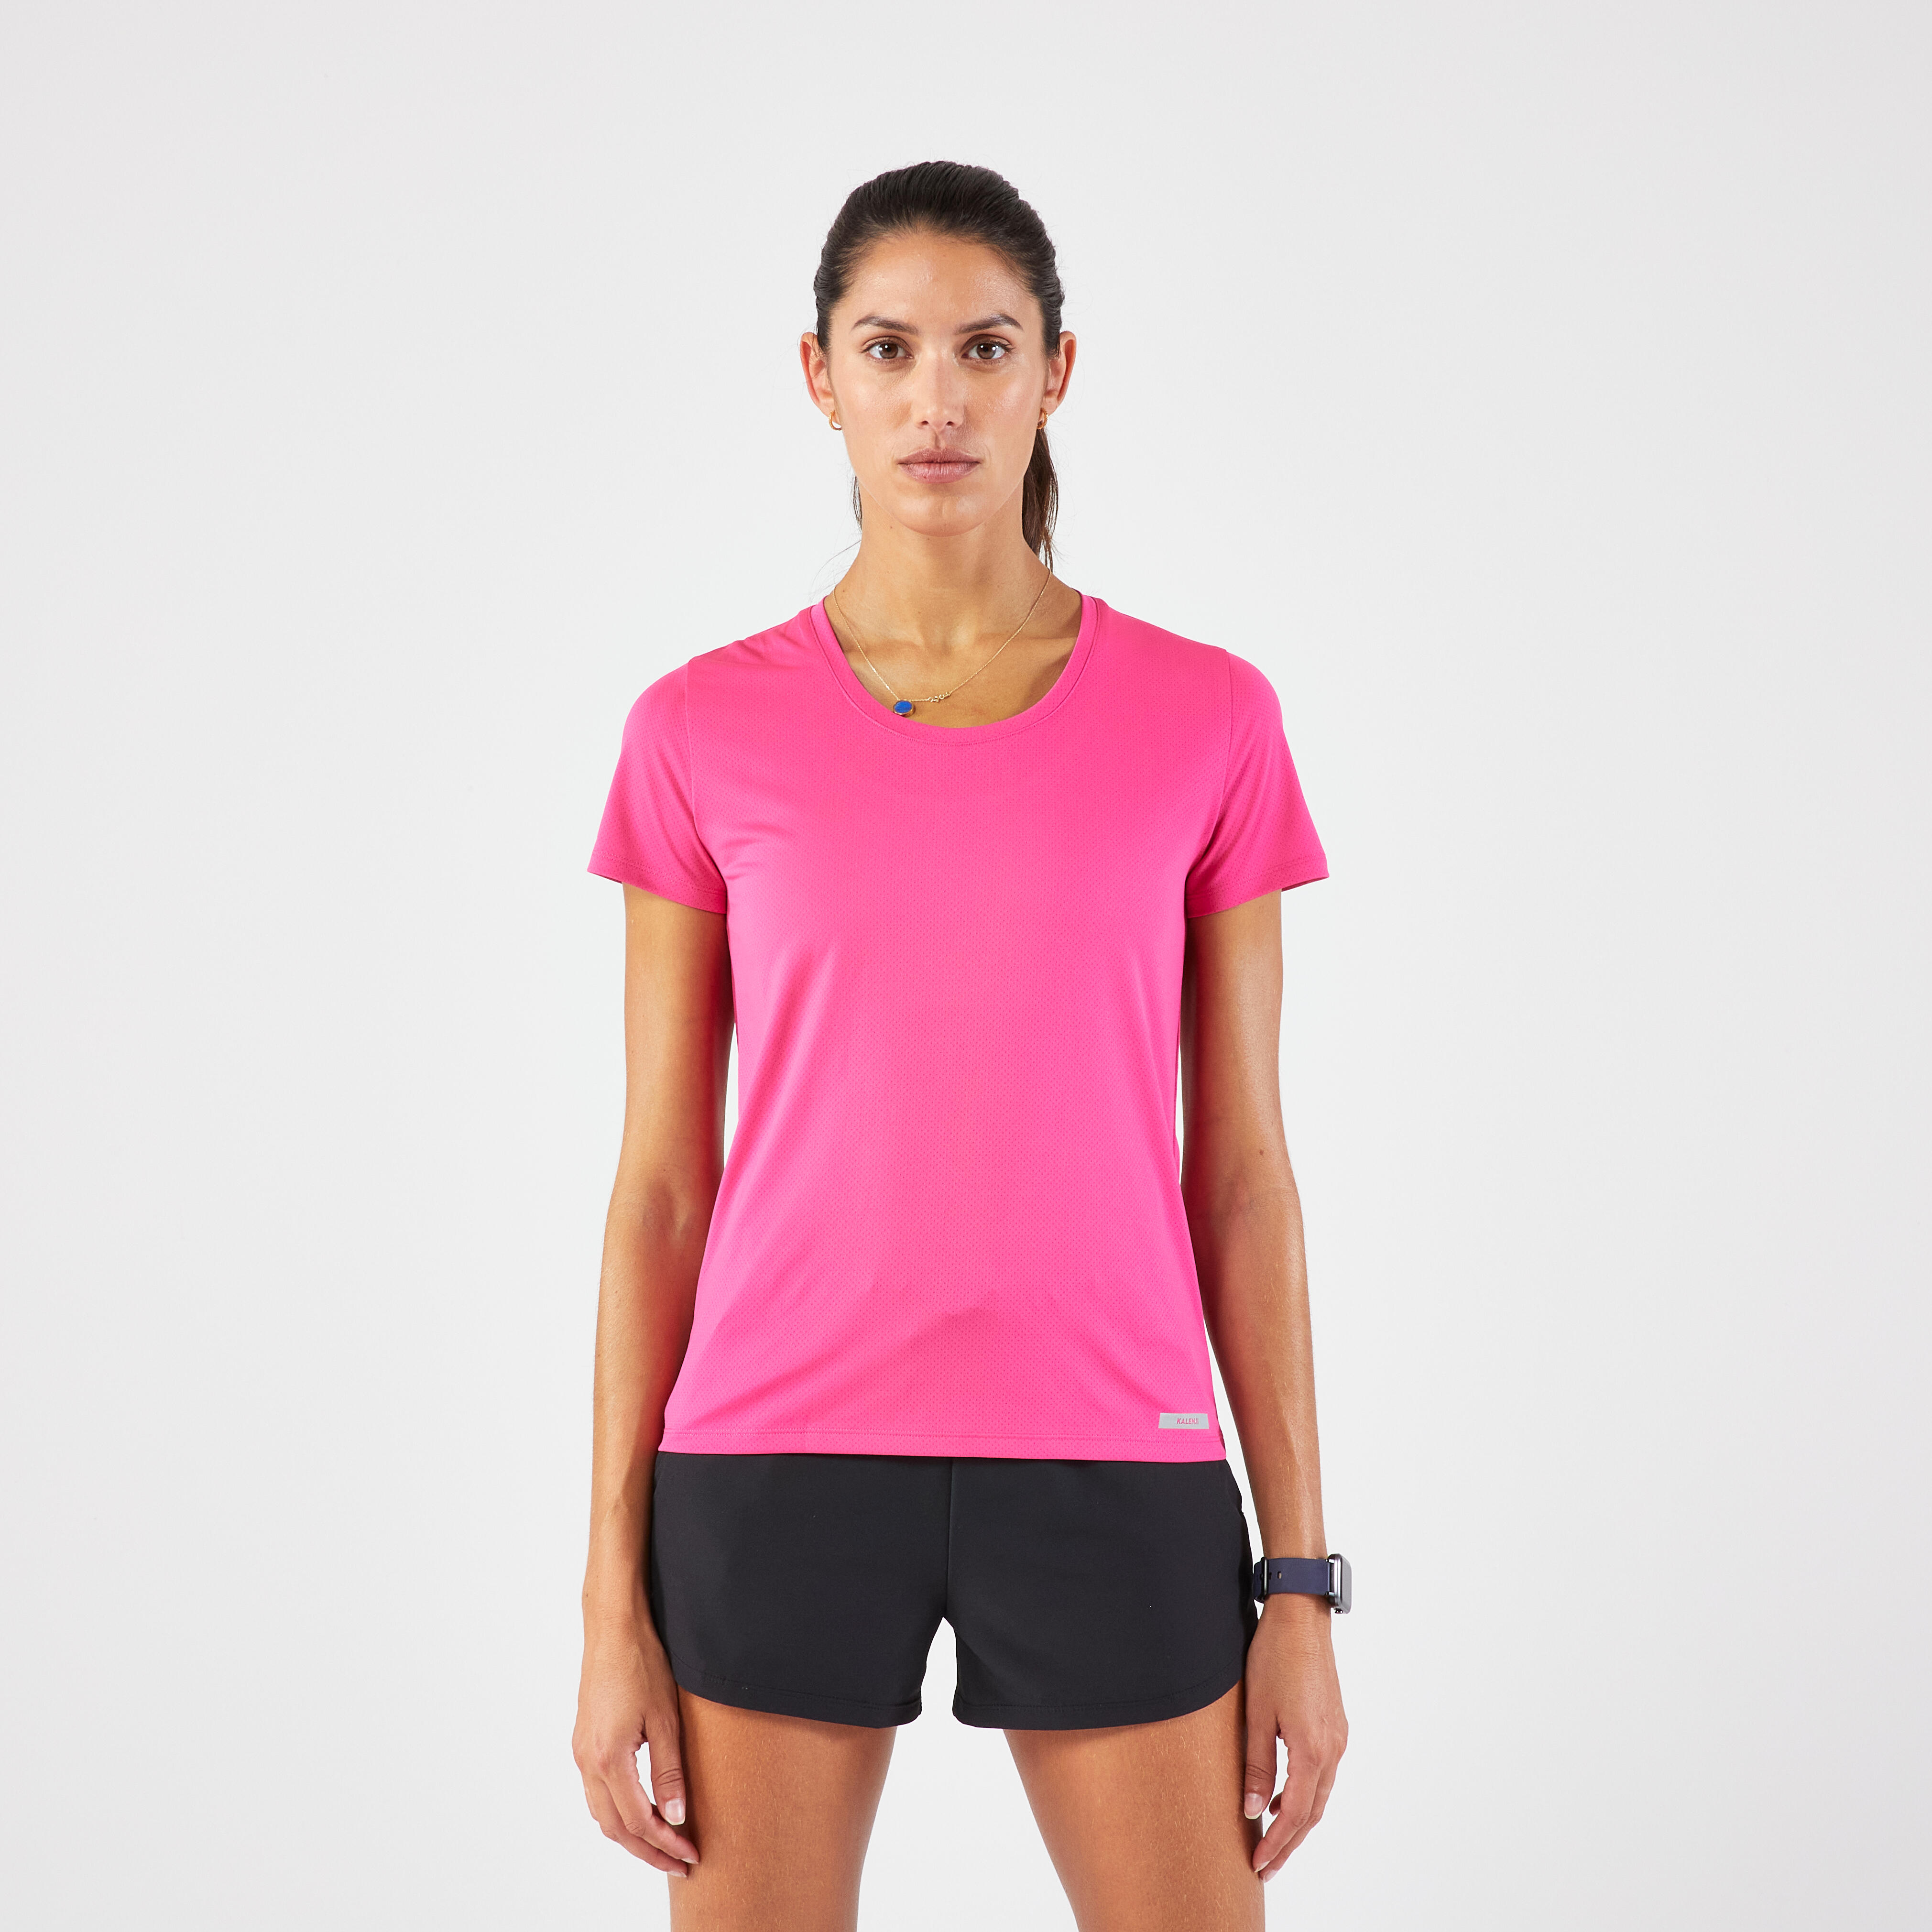 Women's Running T-Shirt